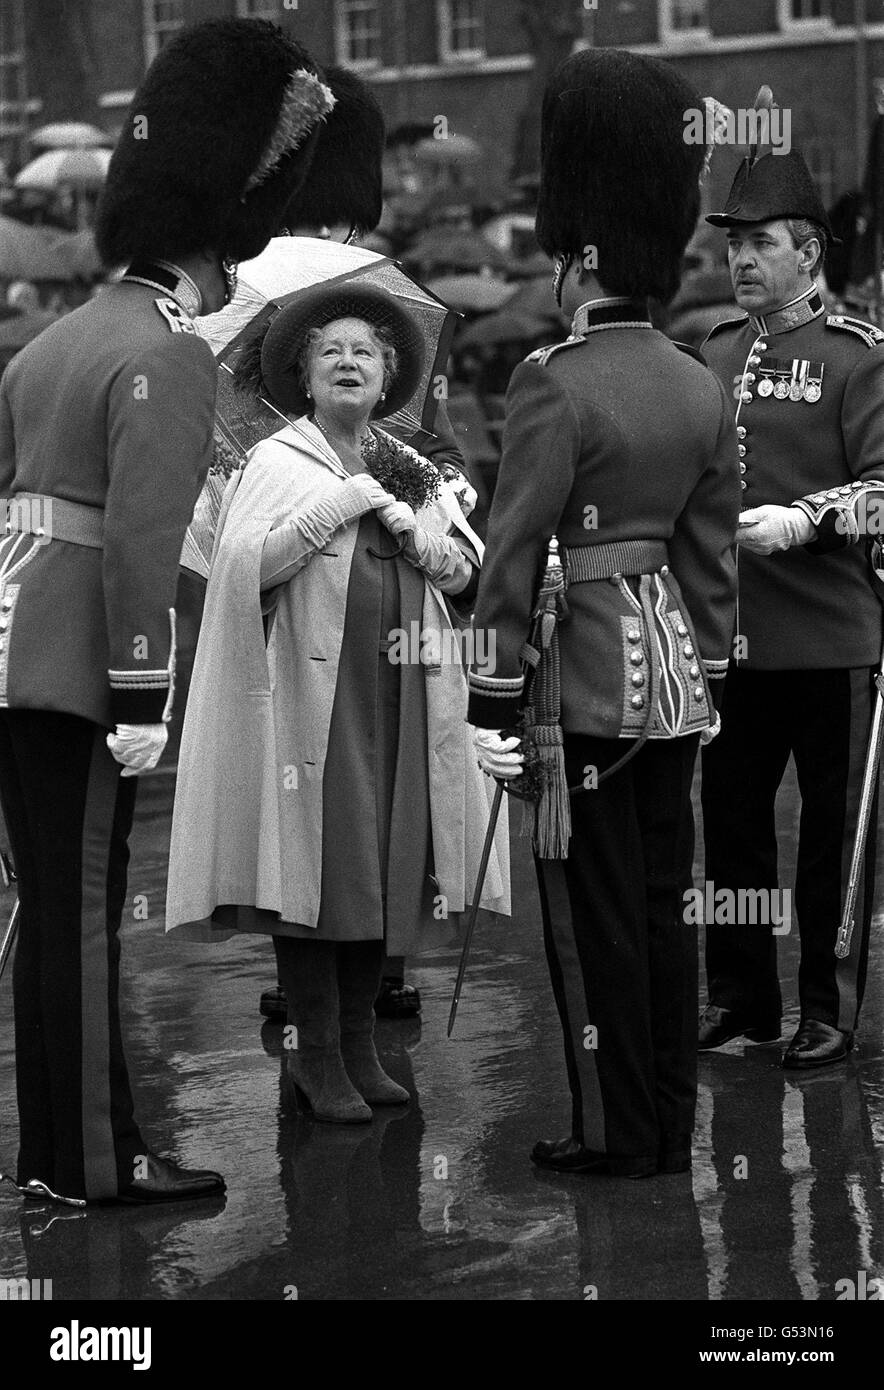 1980: Une grande quantité de shamrock orne le cap de pluie de la Reine mère à la caserne de Victoria, Windsor, Berkshire, où elle a présenté aux officiers des gardes irlandais shamrock pendant leur traditionnelle parade de la Saint-Patrick. Banque D'Images